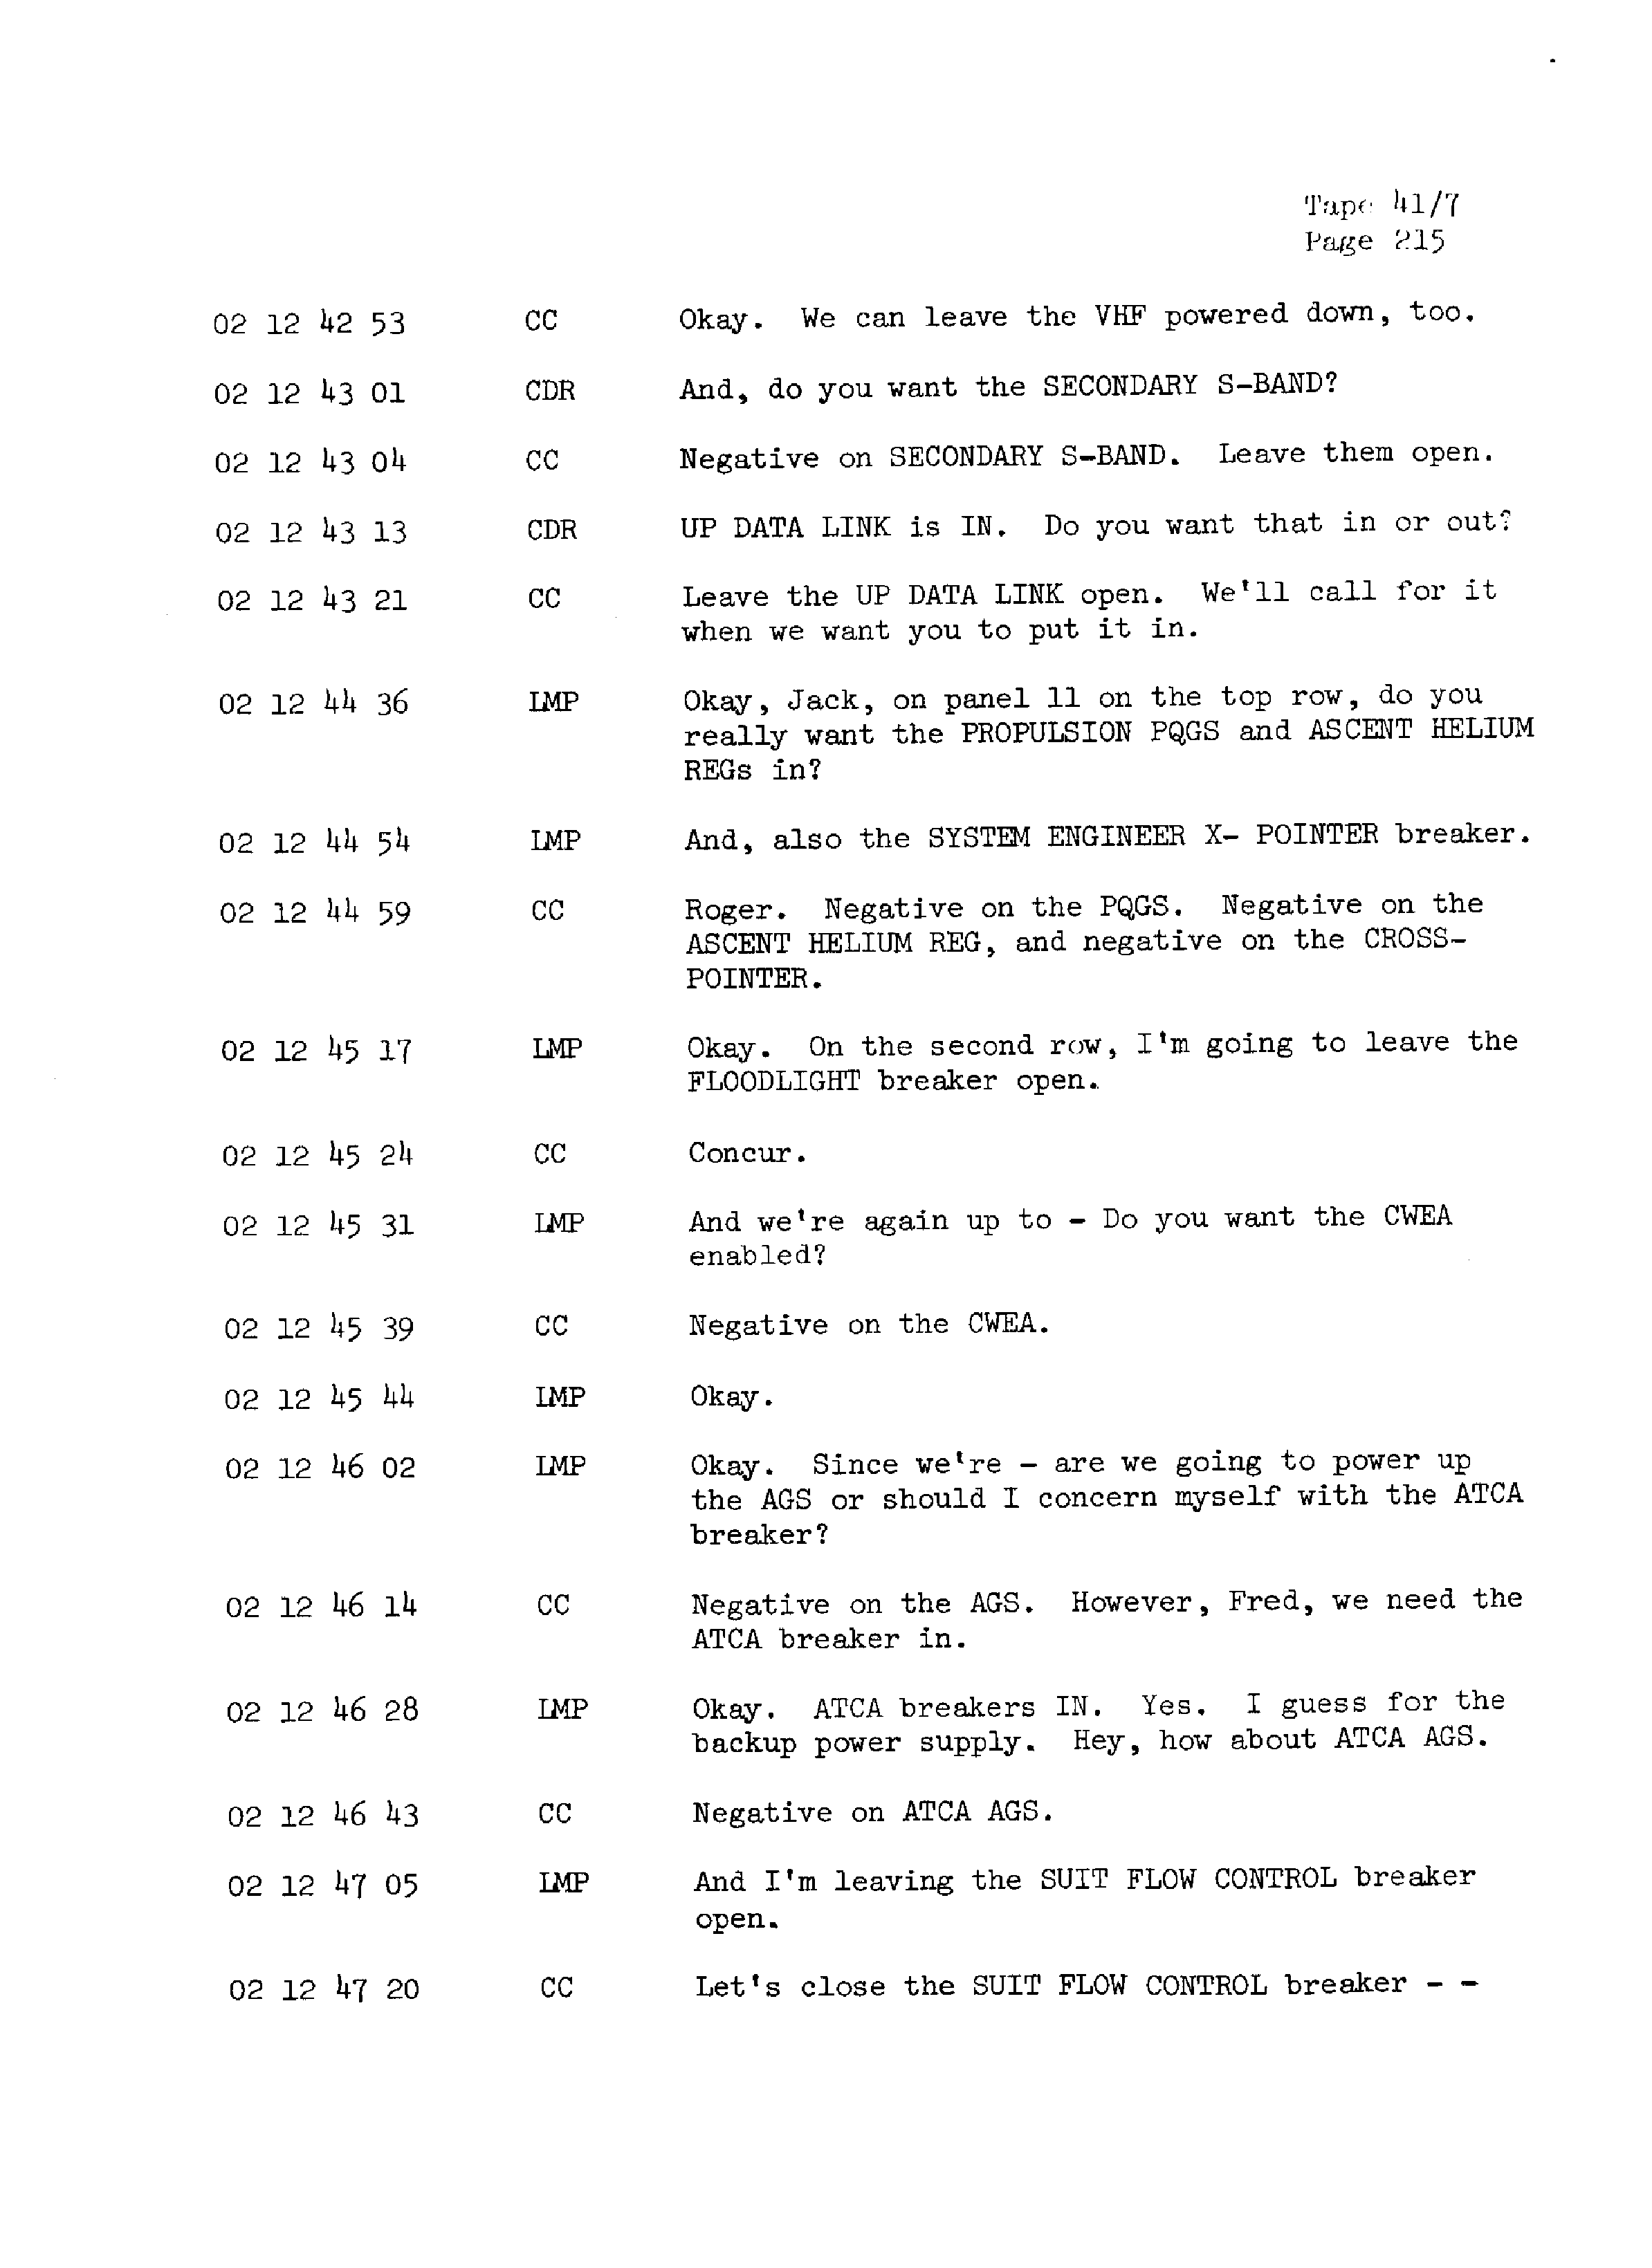 Page 222 of Apollo 13’s original transcript